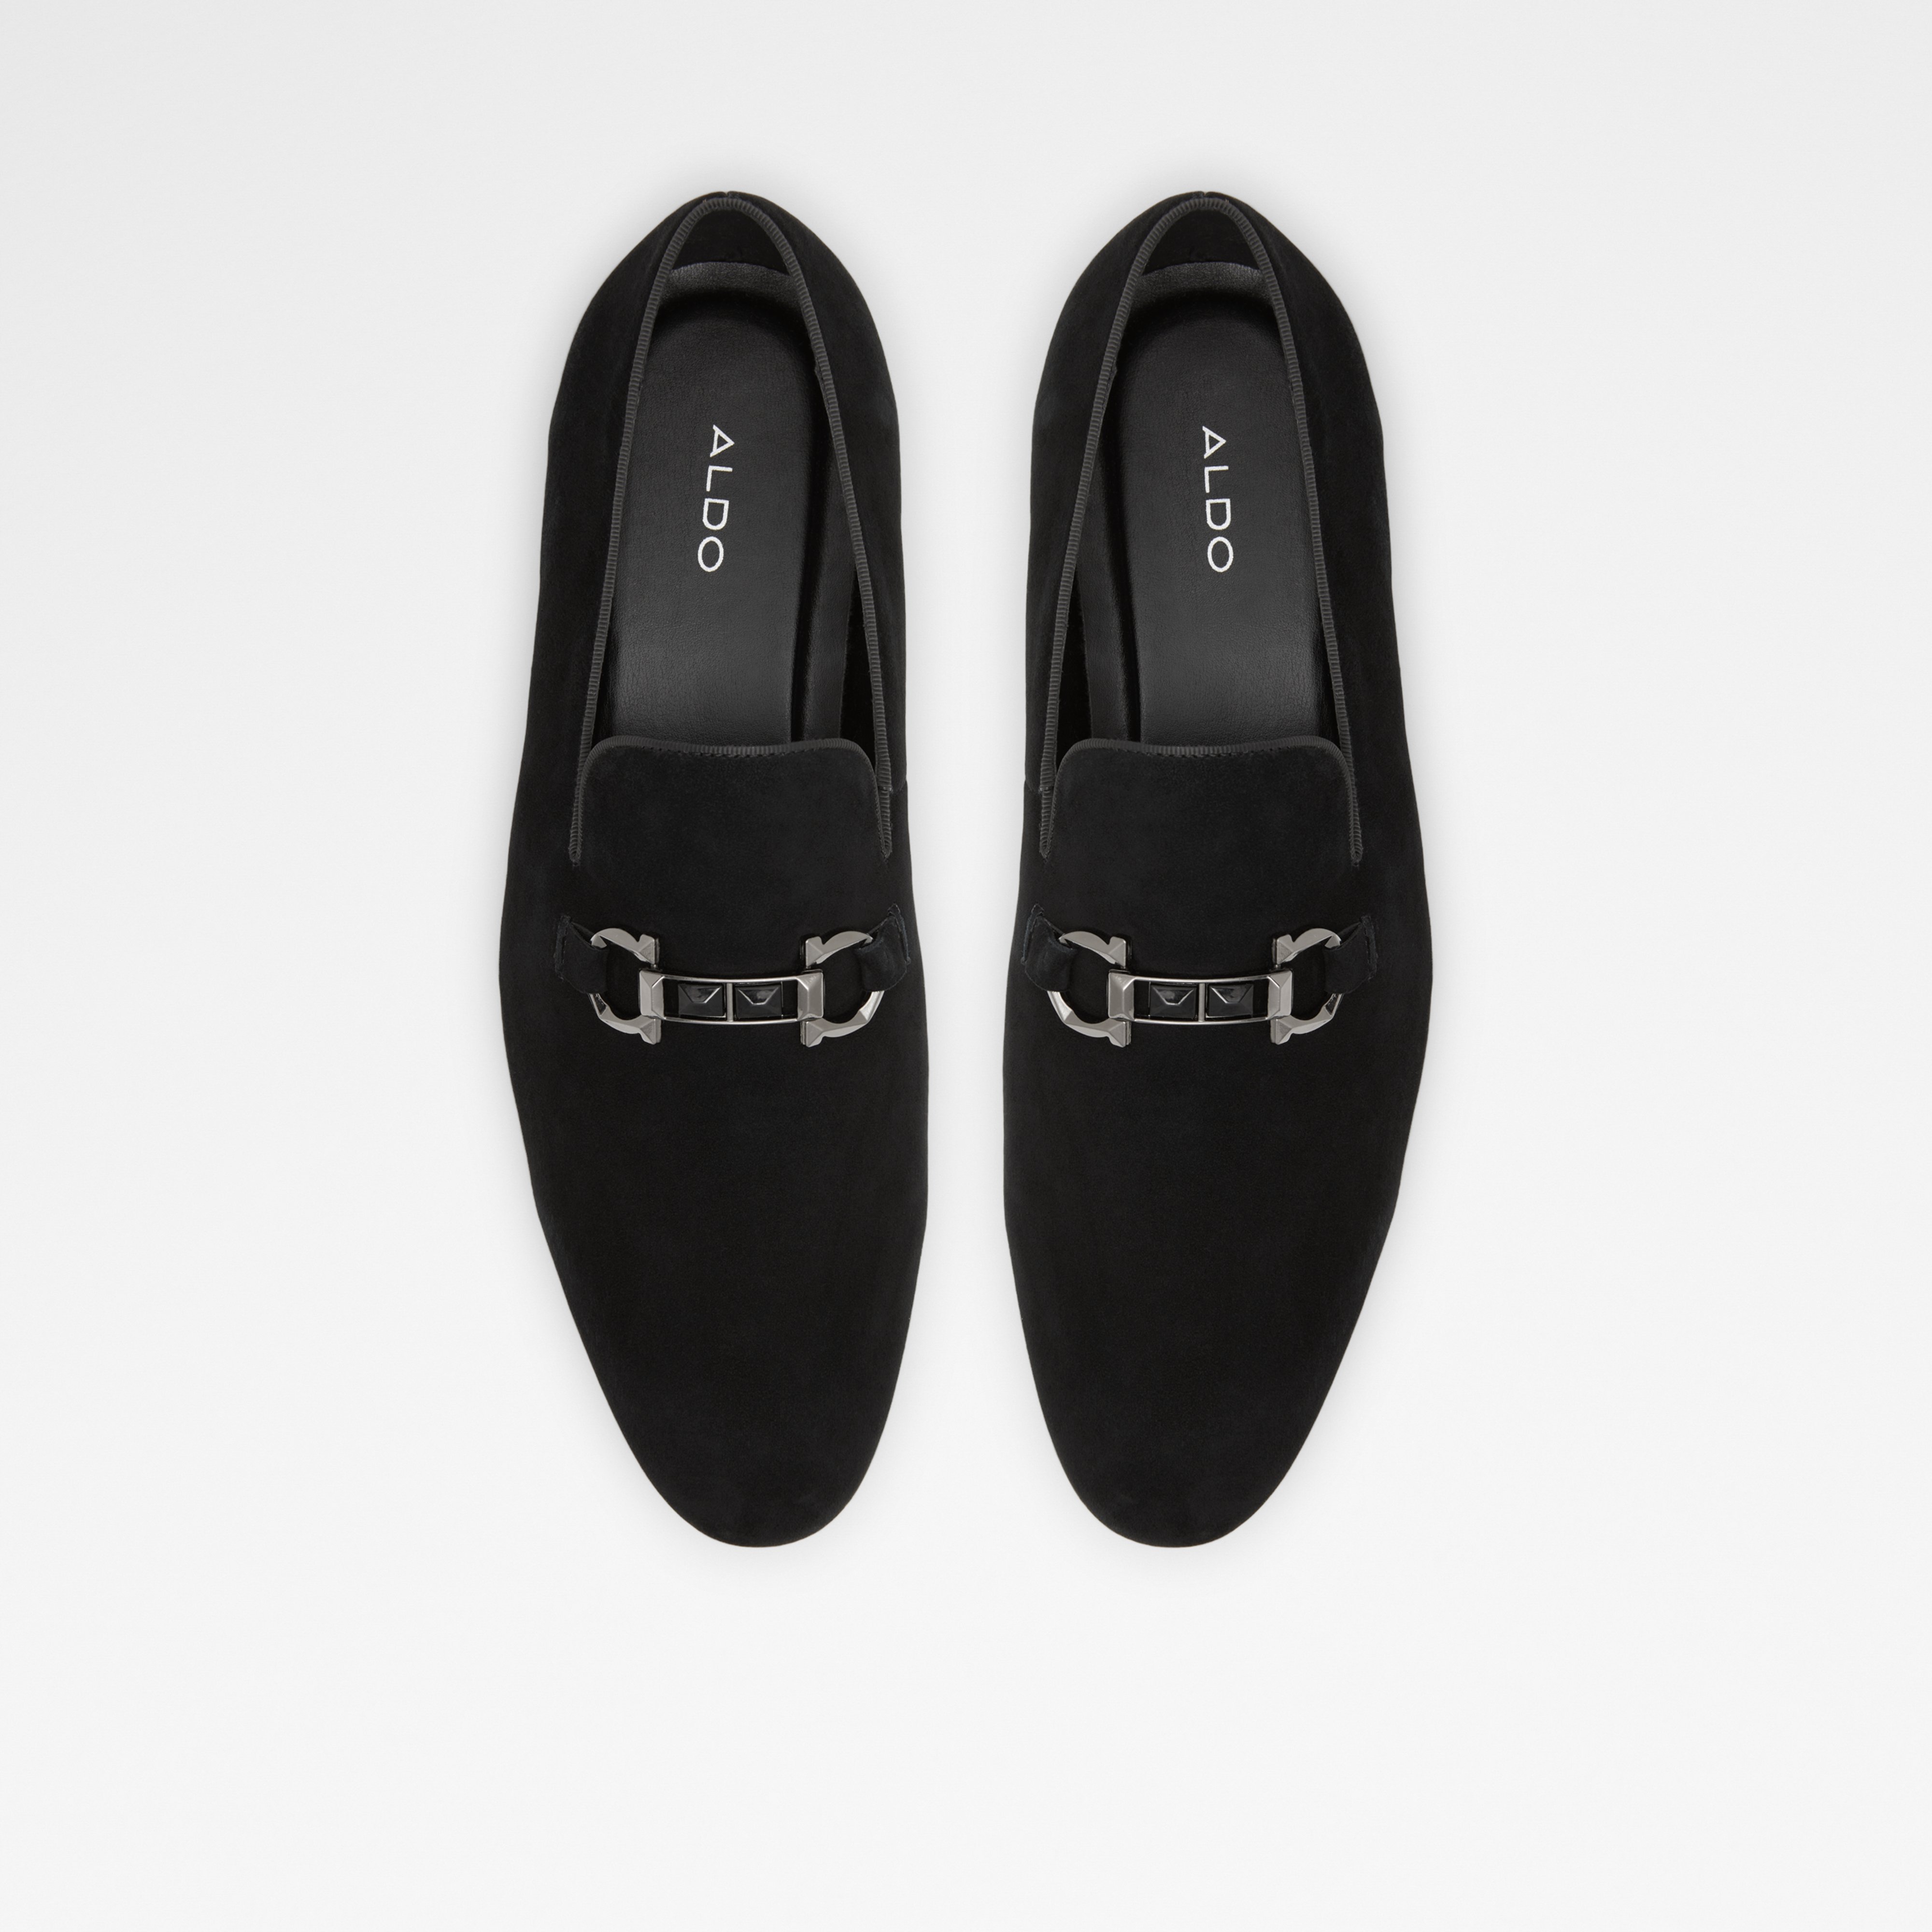 Bowtie Black Synthetic Suede Men's Dress Shoes | ALDO US